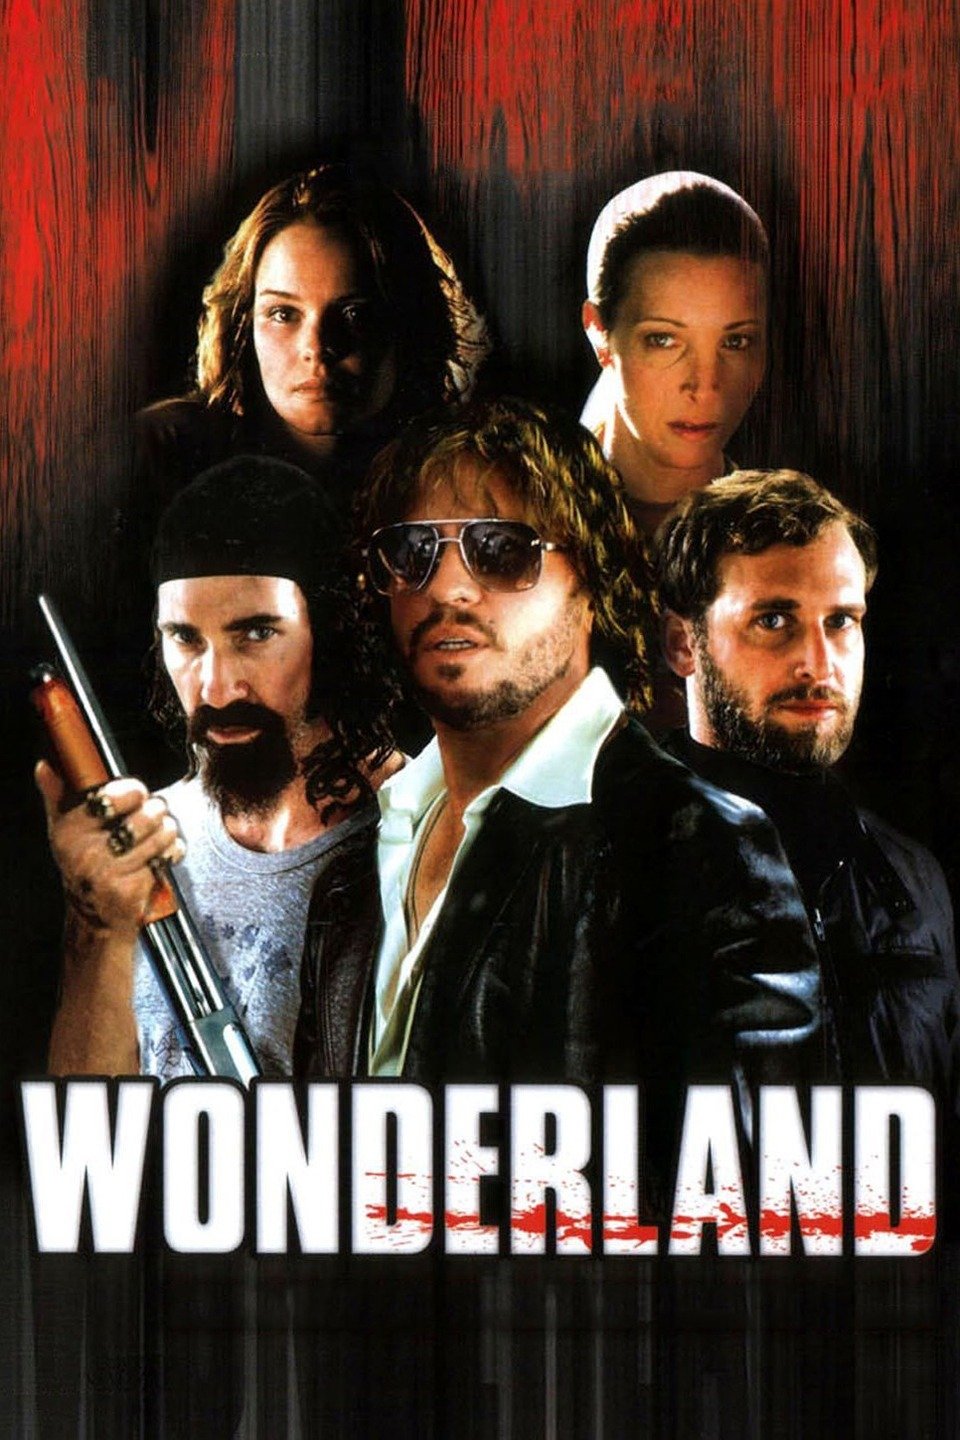 Wonderland Movie Poster - Lionsgate